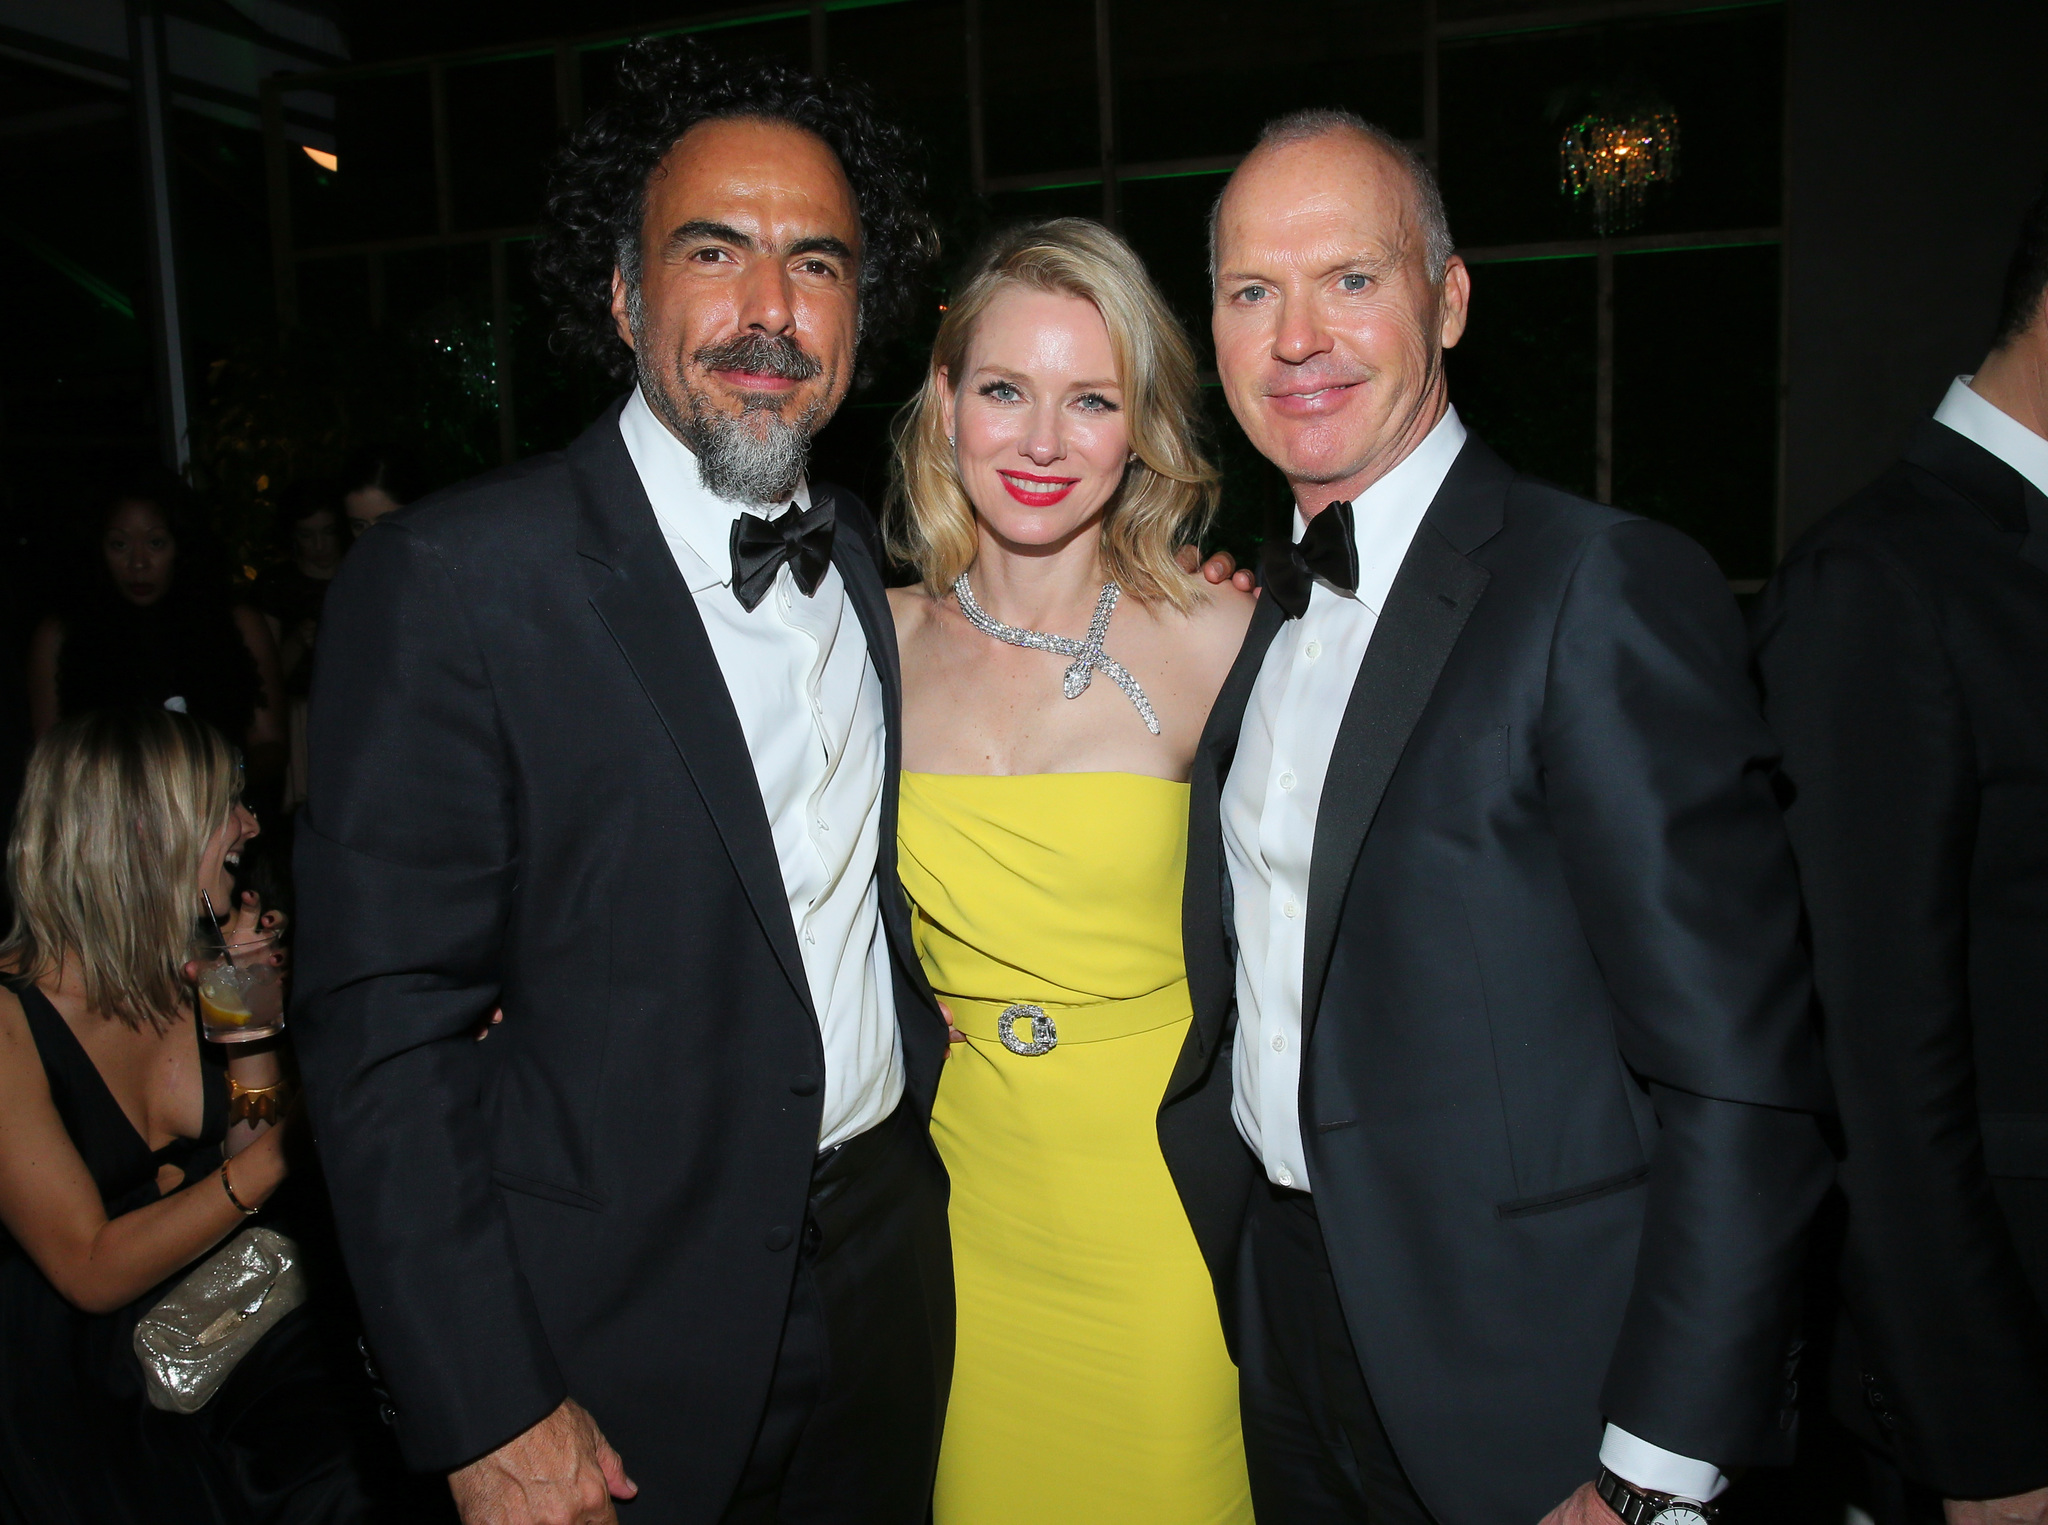 Michael Keaton, Alejandro González Iñárritu and Naomi Watts